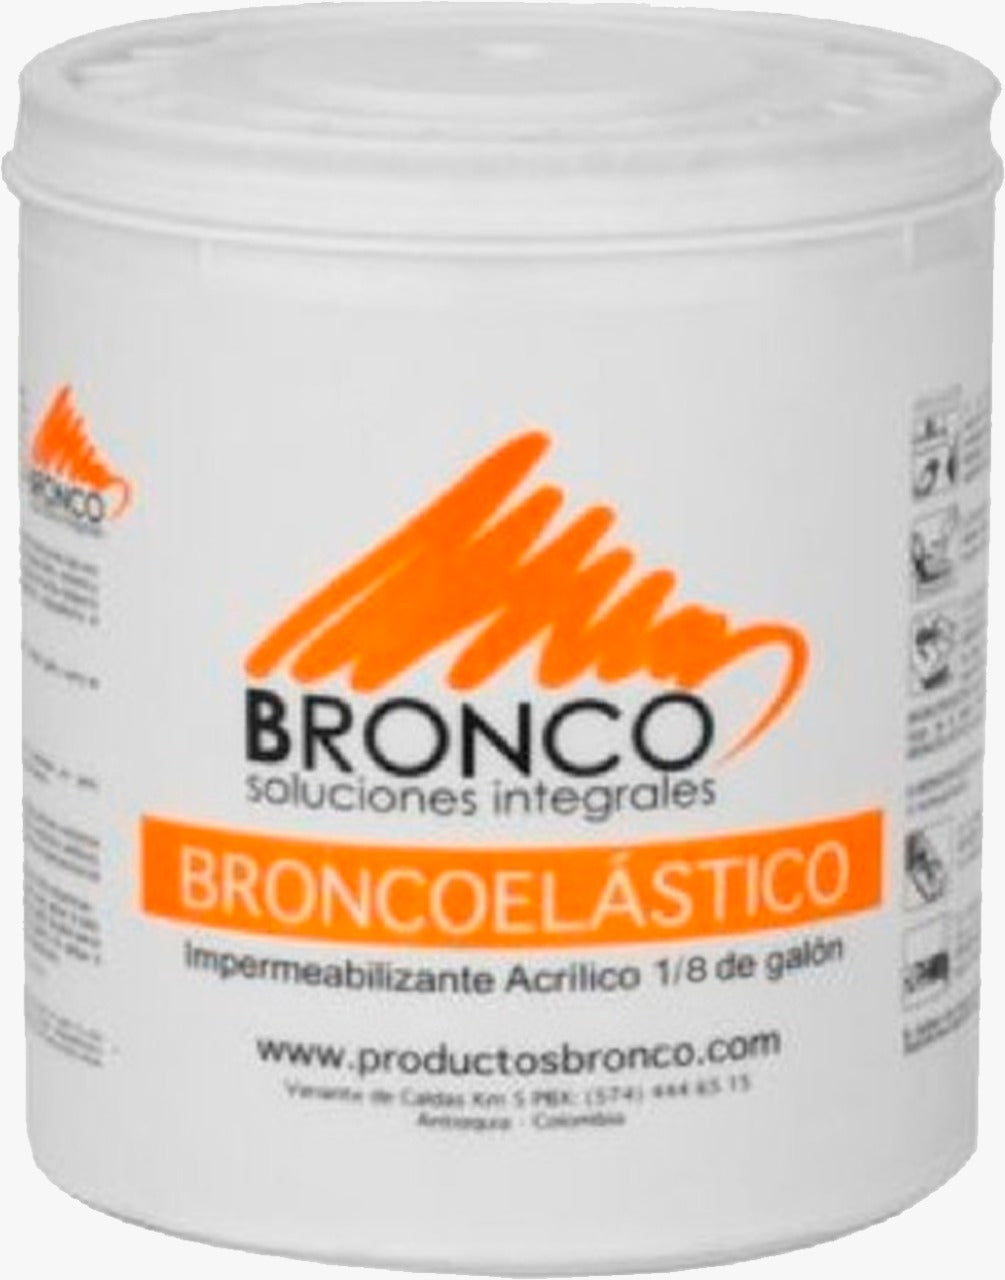 Broncoelastico Blanco